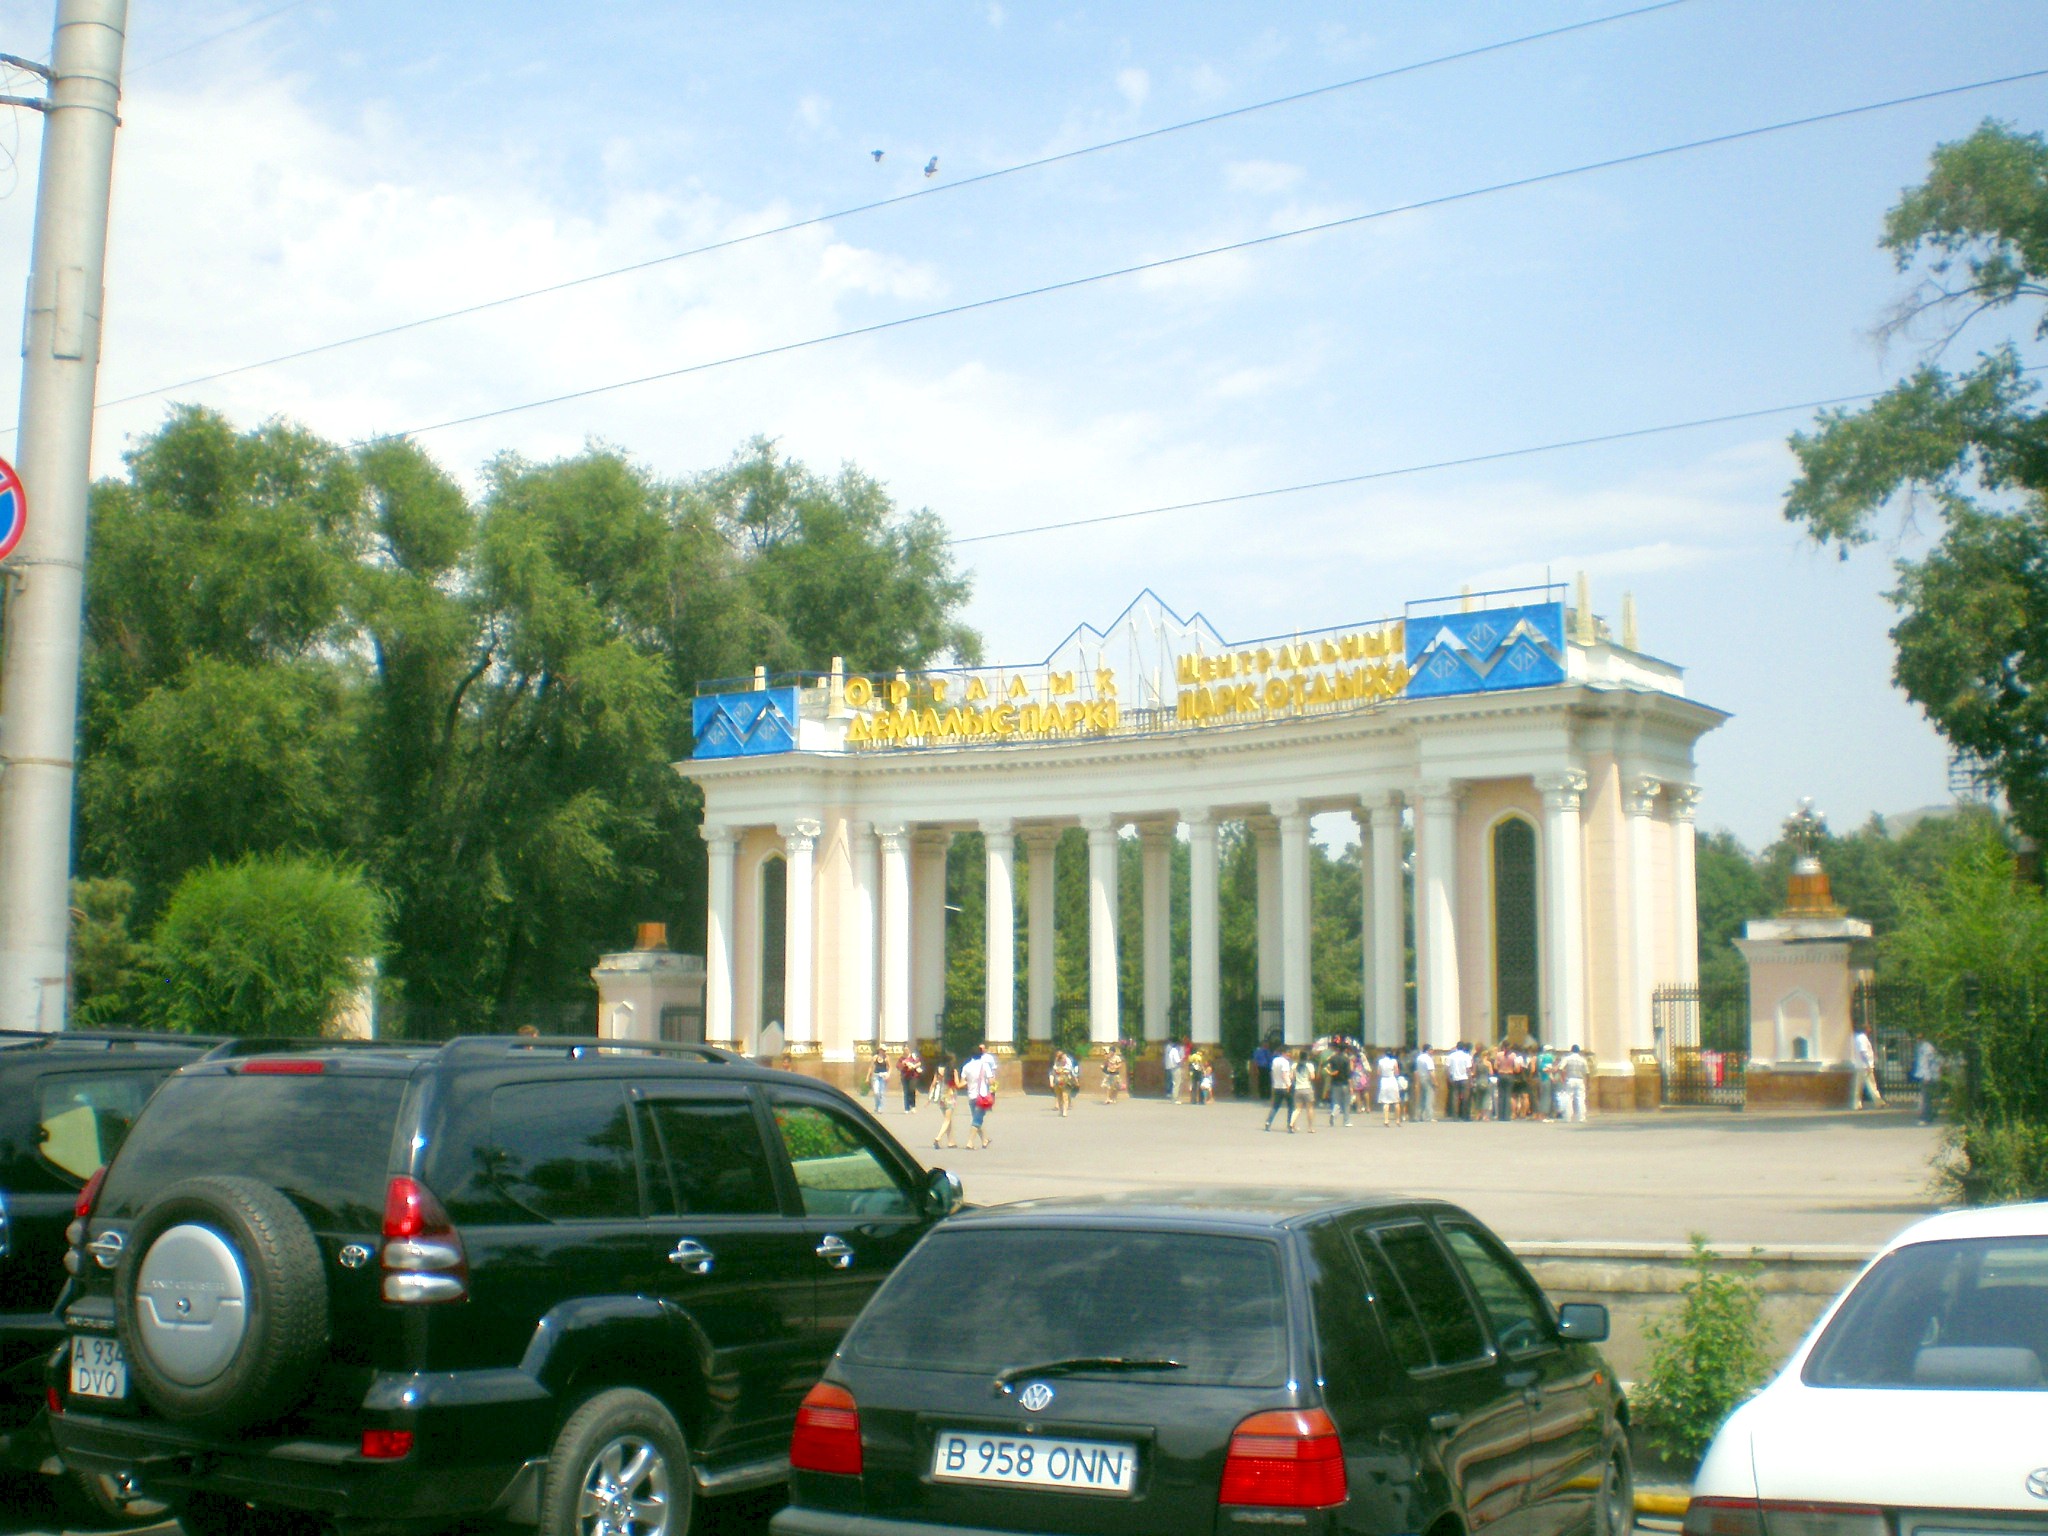 Алма-Атинская детская железная дорога  —  фотографии, сделанные в 2009 году (часть 1)